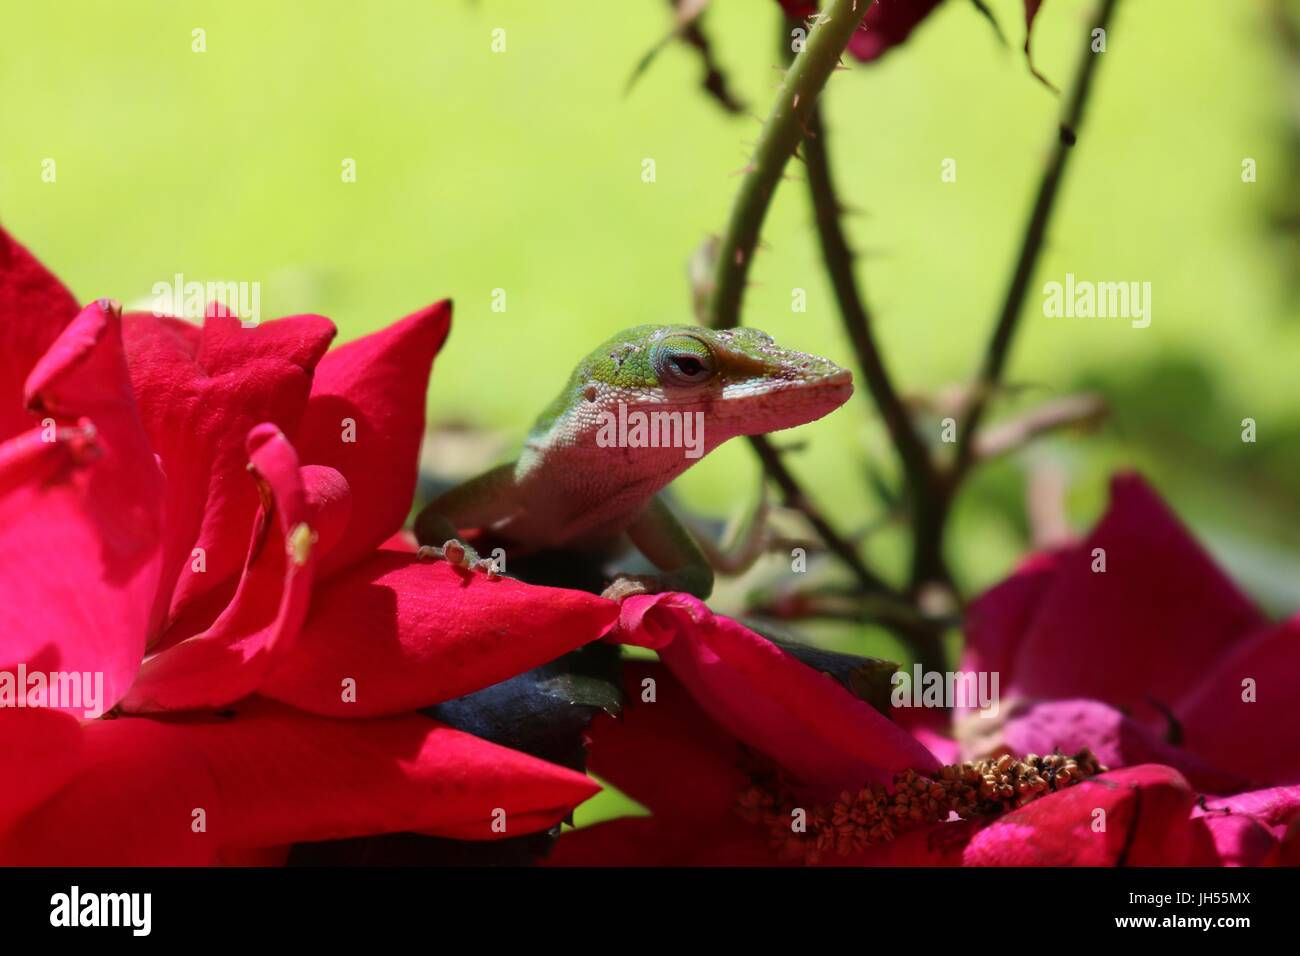 Close up of a green anole lizard dans un rosier Banque D'Images